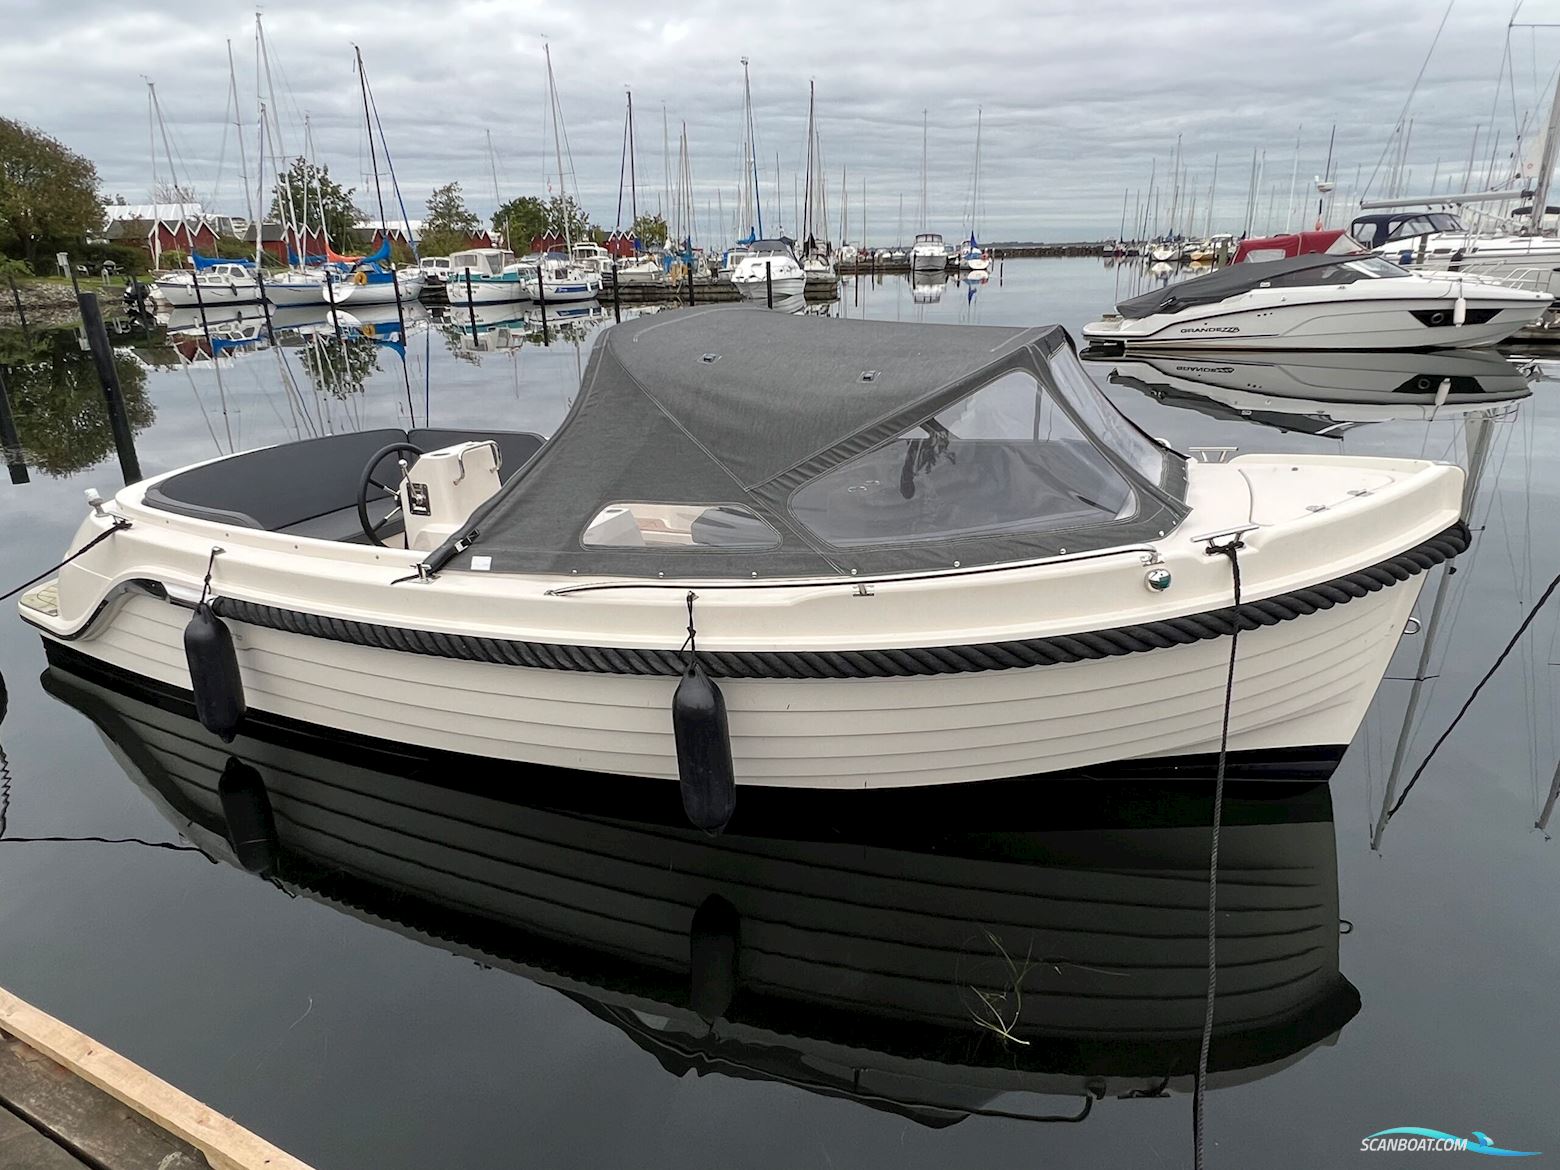 Interboat Intender 640 Motorboot 2017, mit Vetus motor, Dänemark